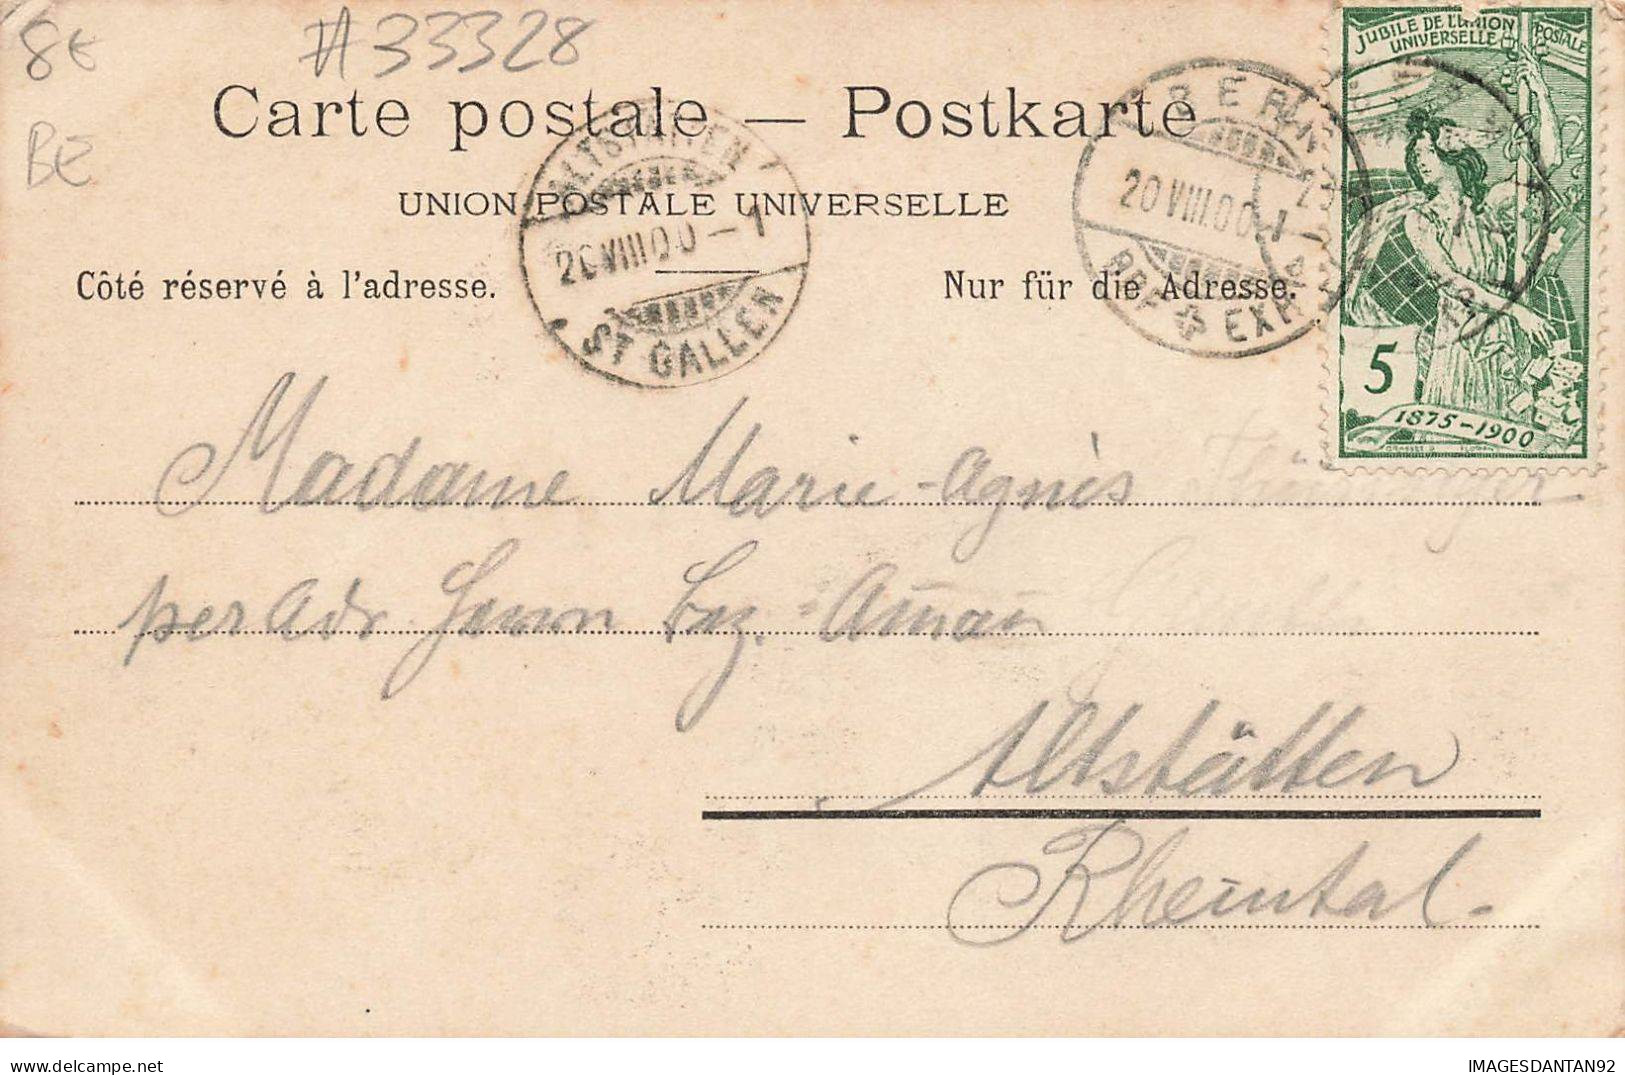 SUISSE #MK33328 GRUSS VON BERNE + TIMBRE JUBILE 1900 - Berna